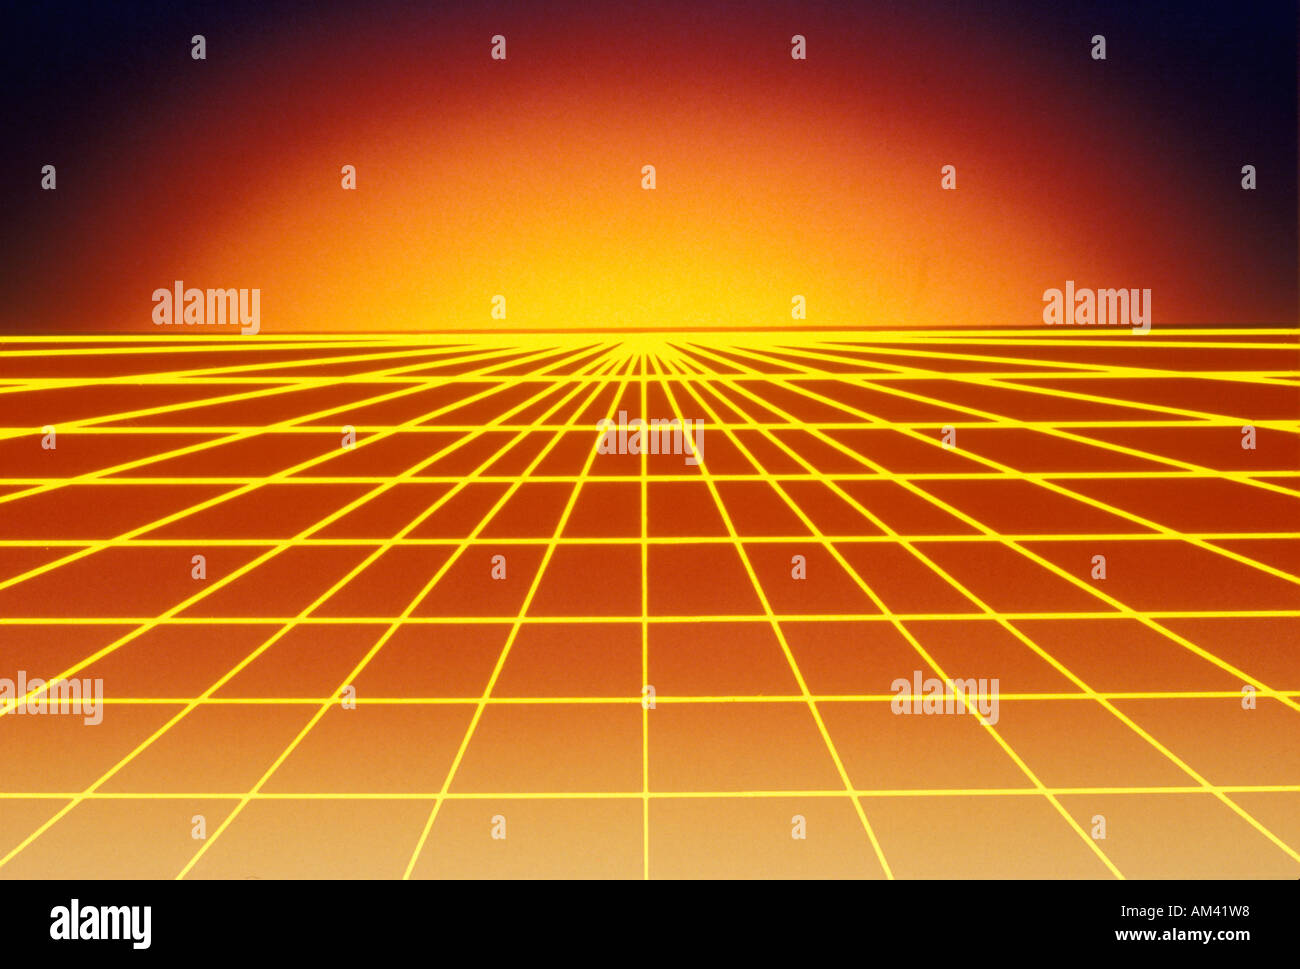 Des effets spéciaux de l'espace grille Jaune sur rouge matrice s'étendant jusqu'à une surface horizon rougeoyant Banque D'Images